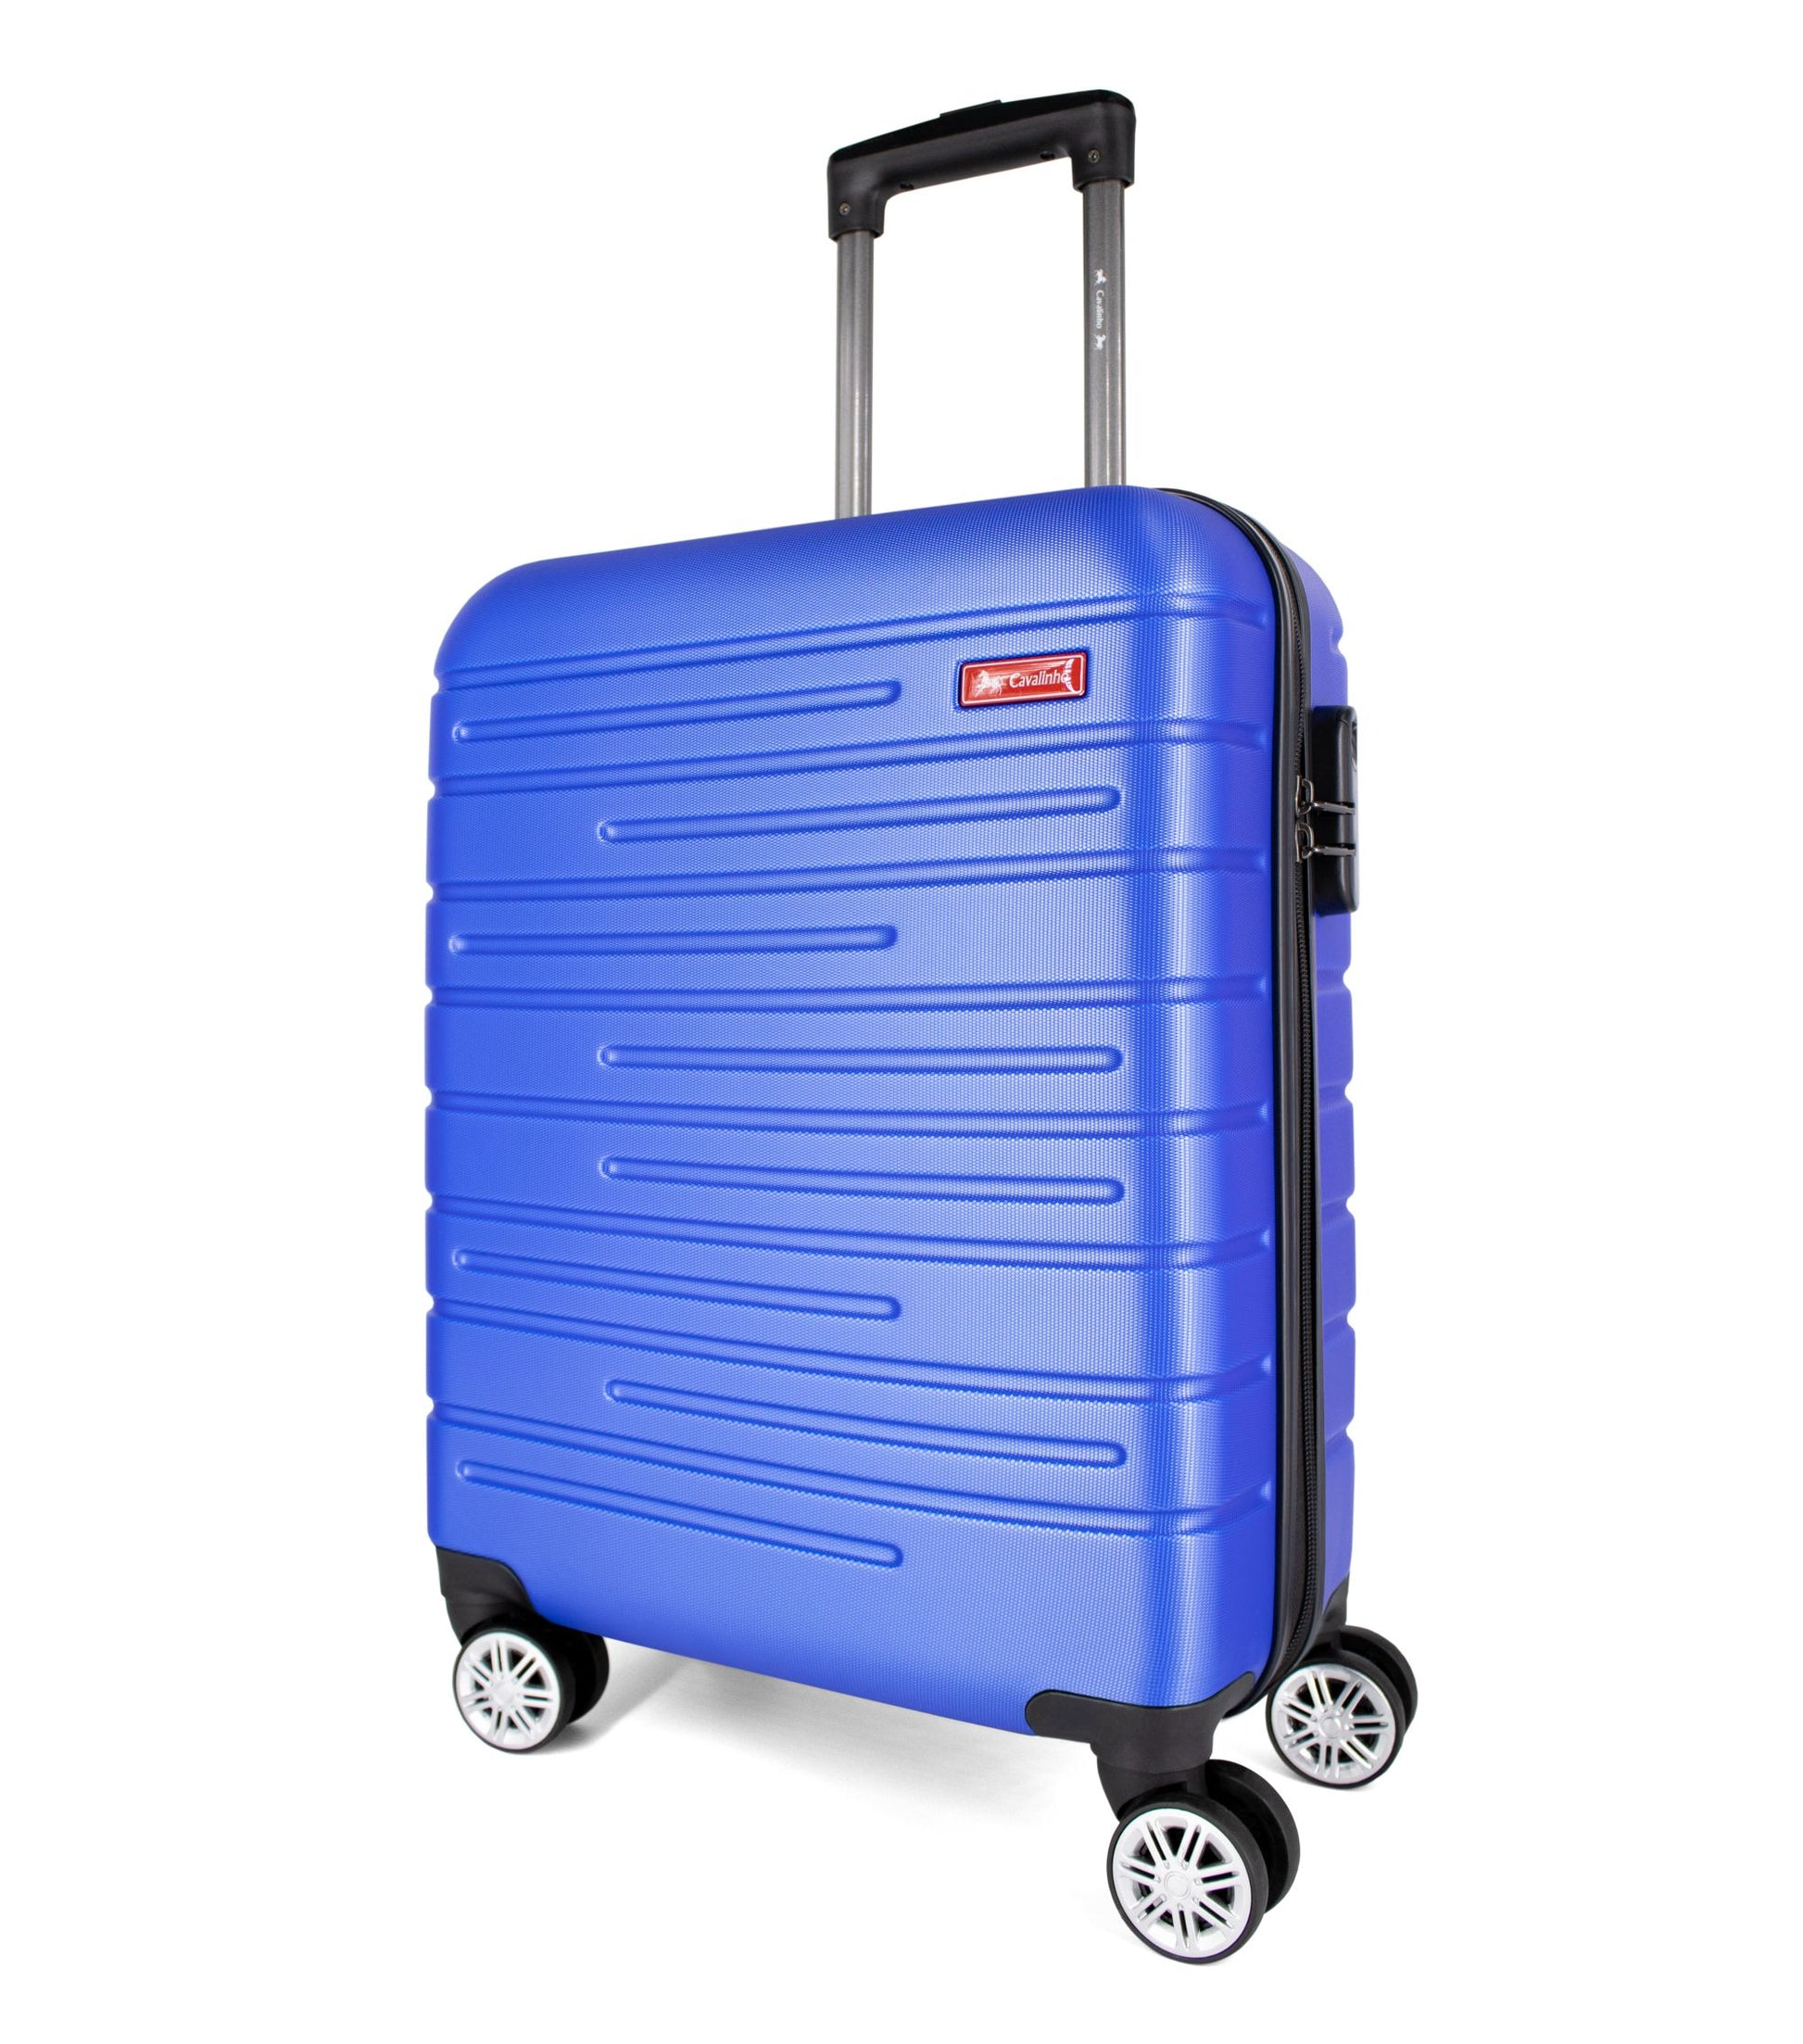 Cavalinho Bon Voyage Carry-on Hardside Luggage (19") - 19 inch Blue - 68020005.03.19_2